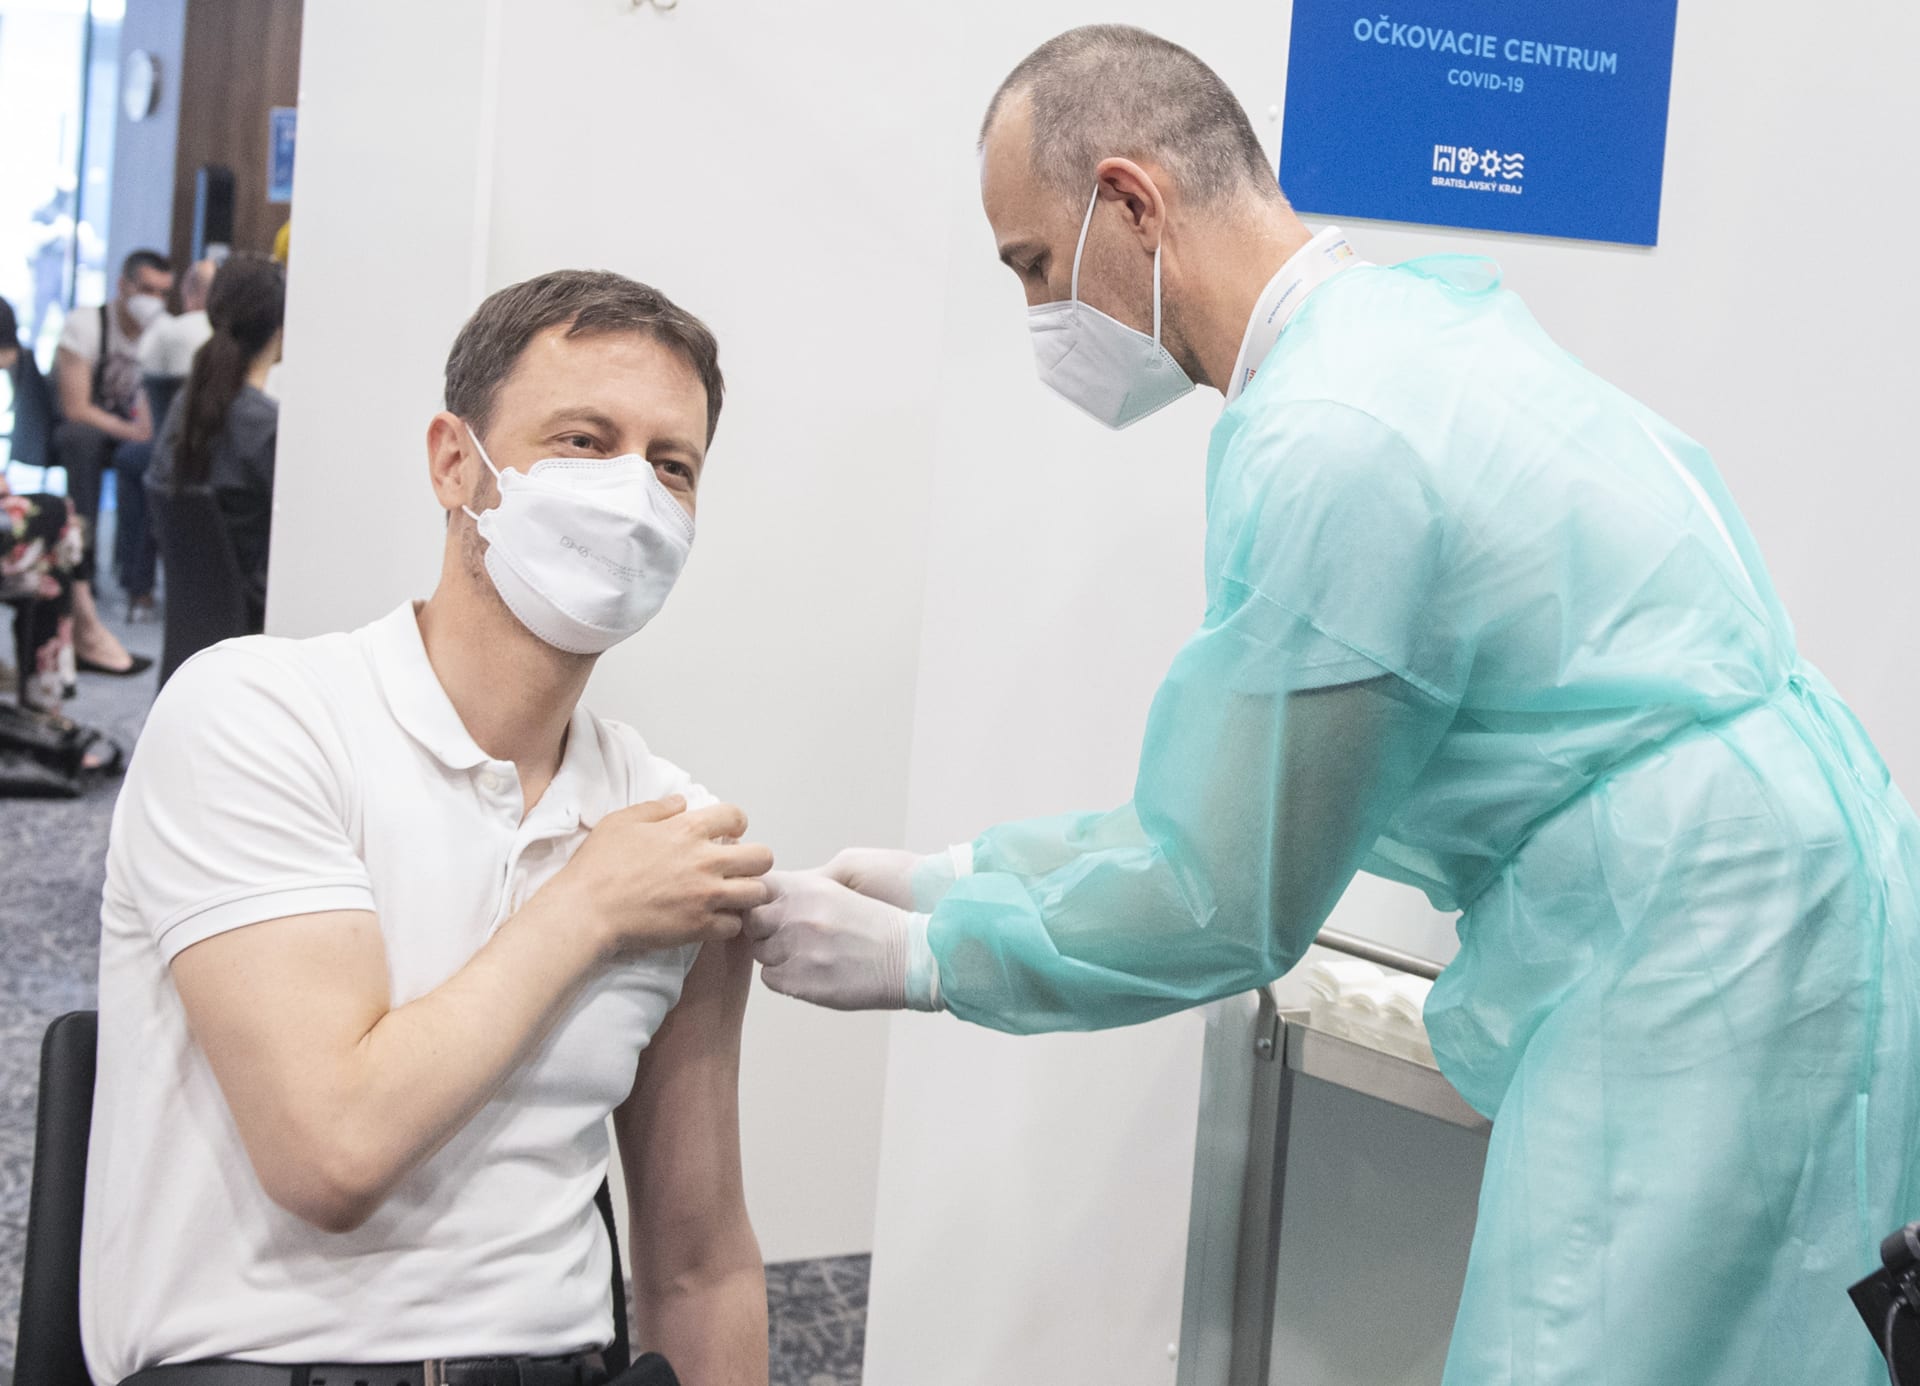 Slovenský premiér Eduard Heger dostává vakcínu proti covidu. (ilustrační foto)